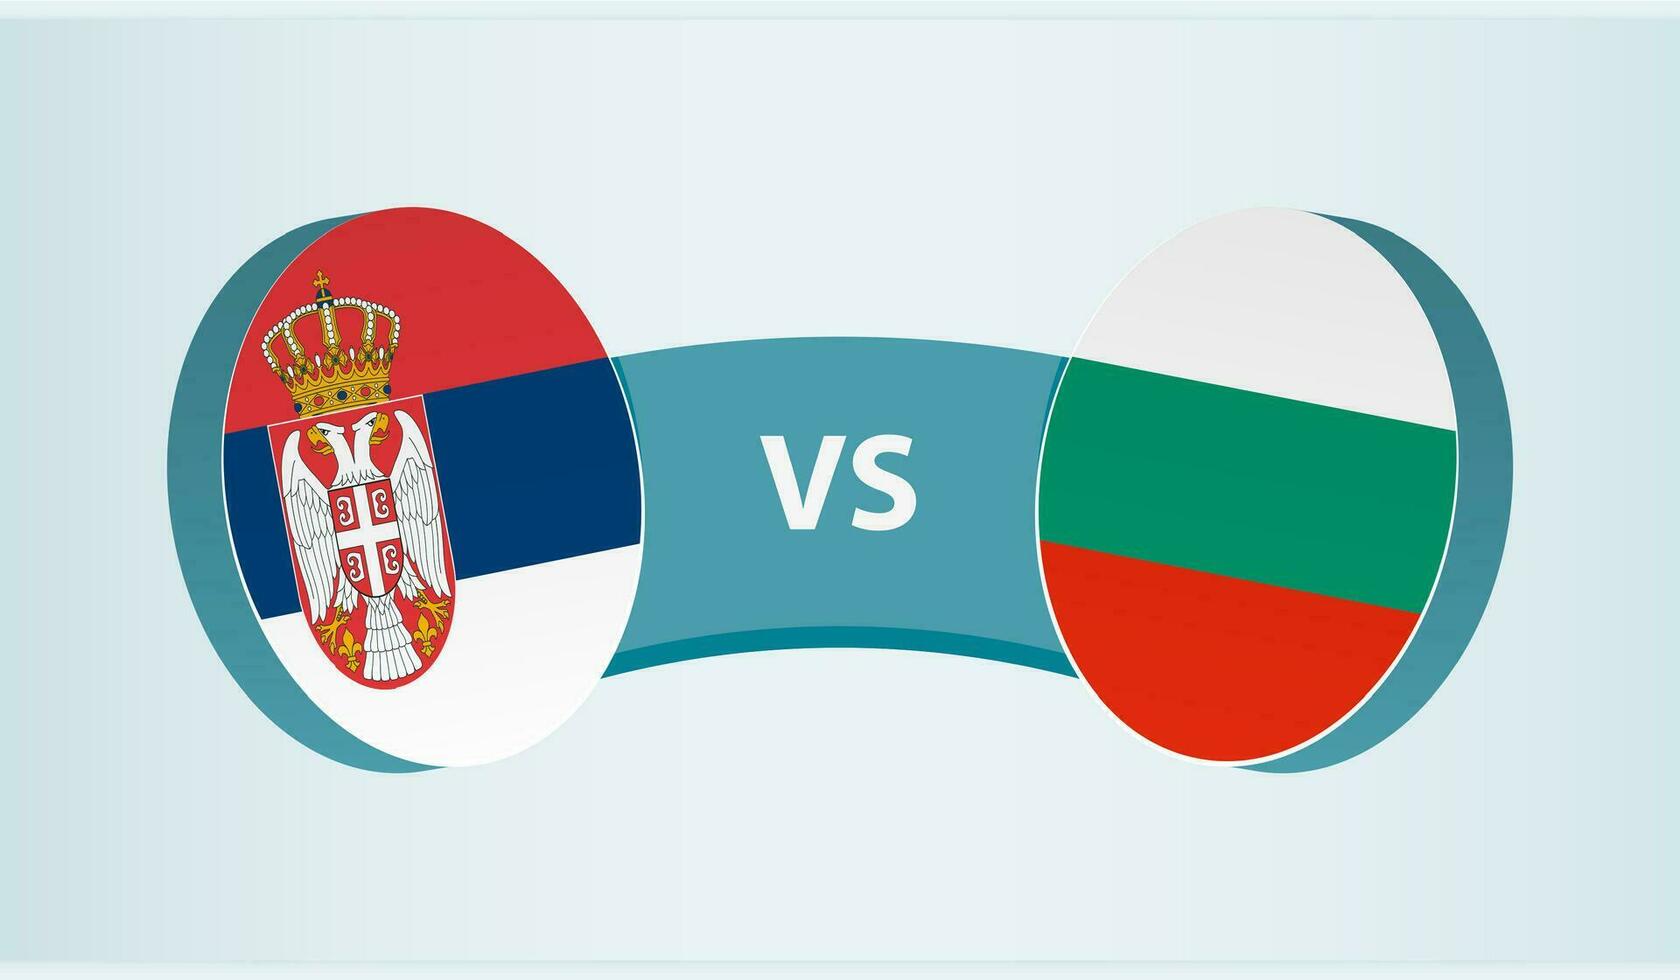 Servië versus bulgarije, team sport- wedstrijd concept. vector